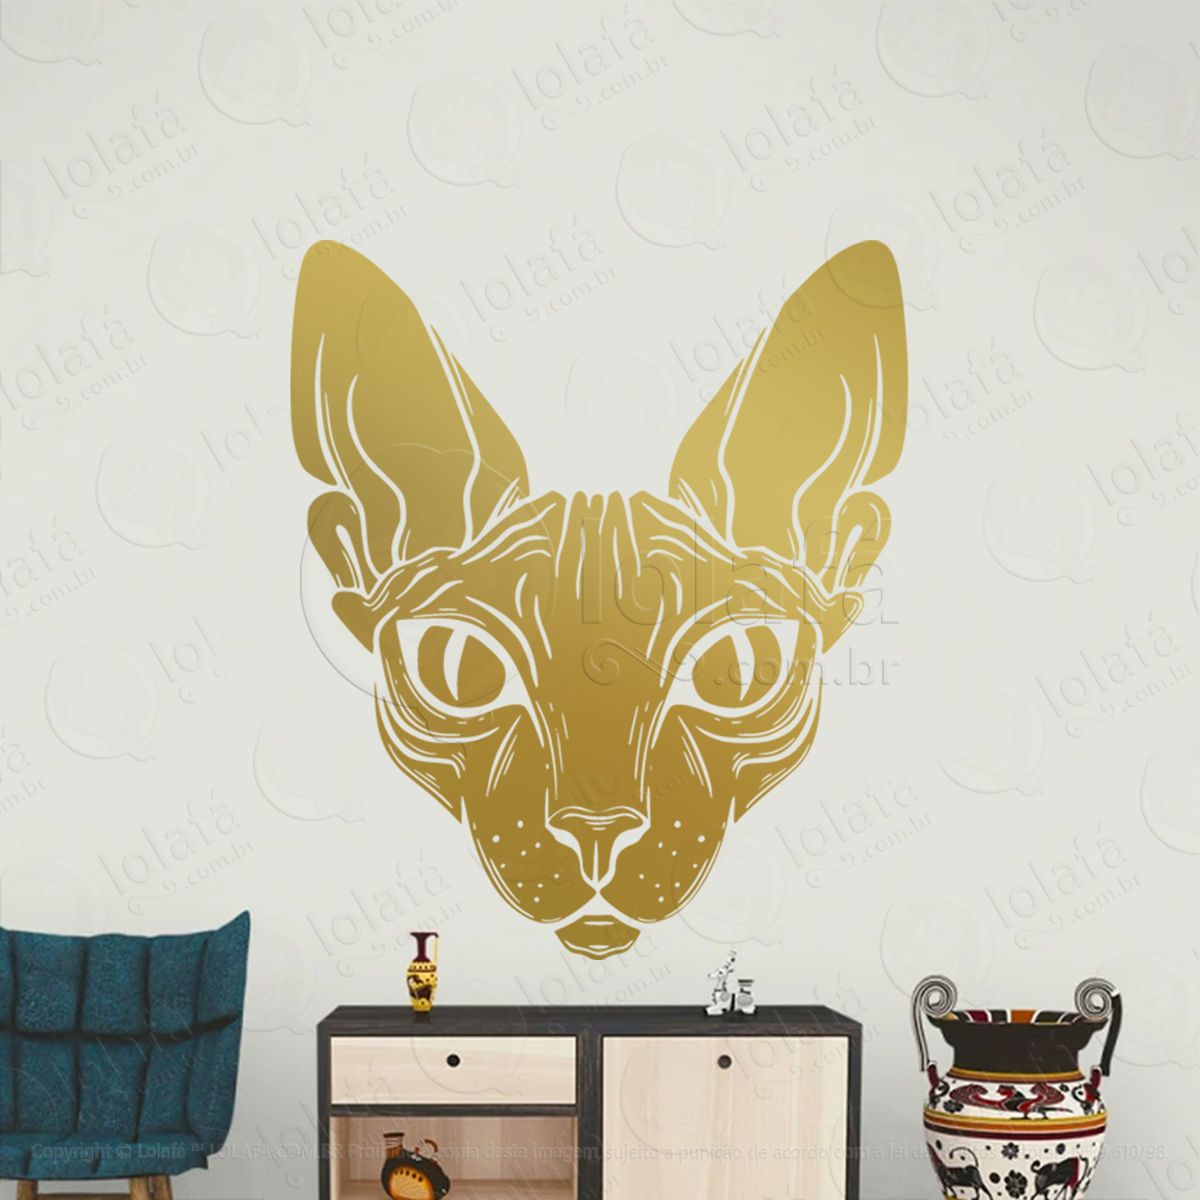 gato esfinge sphinx cat adesivo de parede decorativo para casa, sala, quarto, vidro e altar ocultista - mod:61